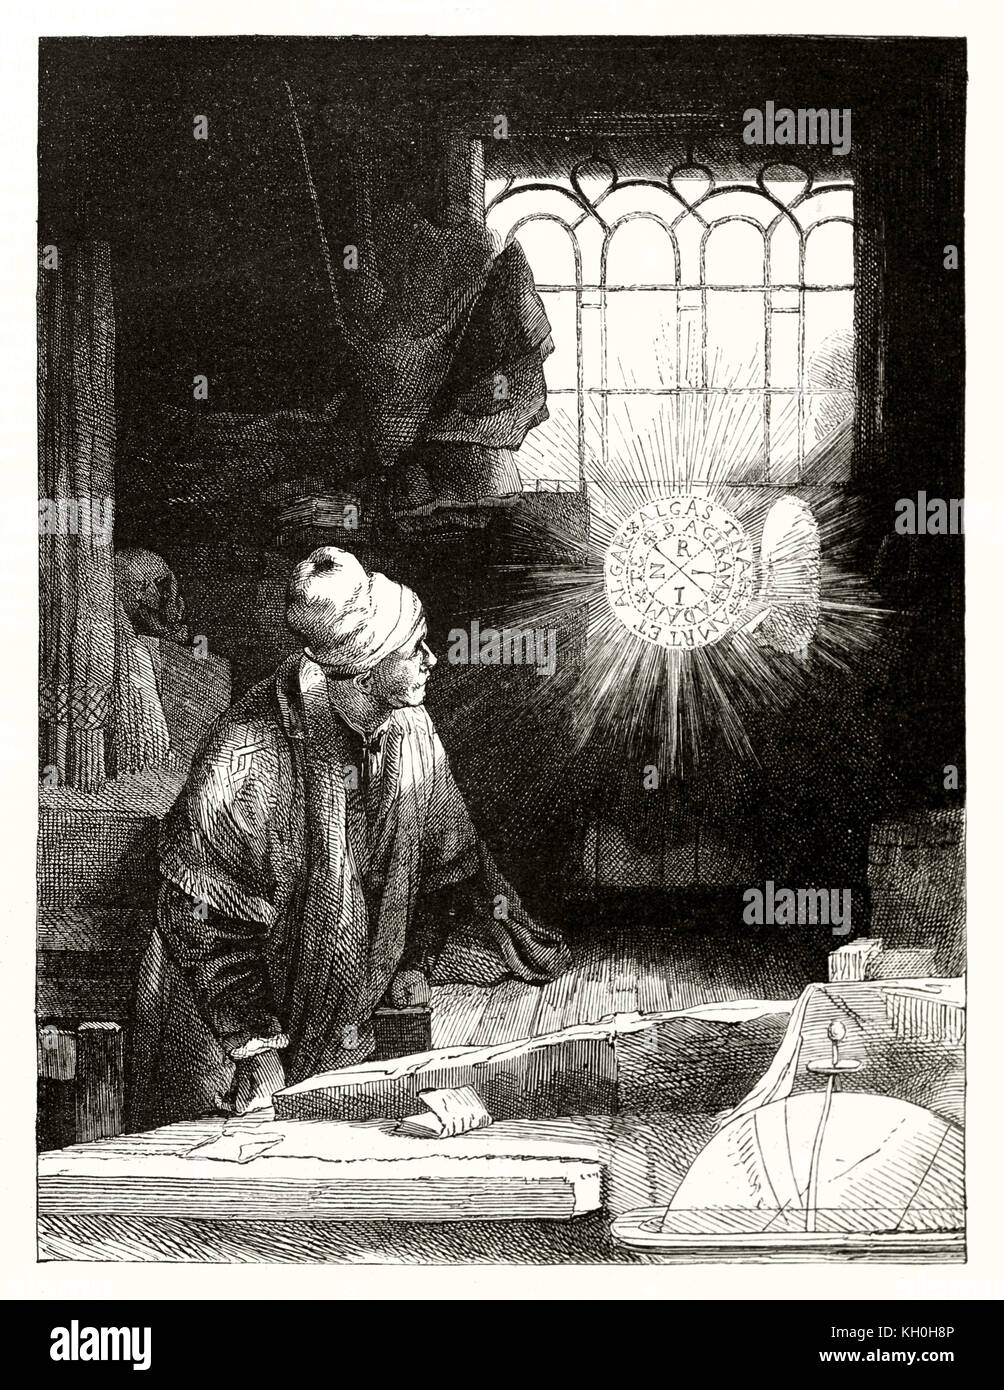 Alte graviert Reproduktion eines Radierung von Rembrandt, Doktor Faustus. Durch Marvy und Gouchar, Publ. Auf Magasin Pittoresque, Paris, 1847 Stockfoto